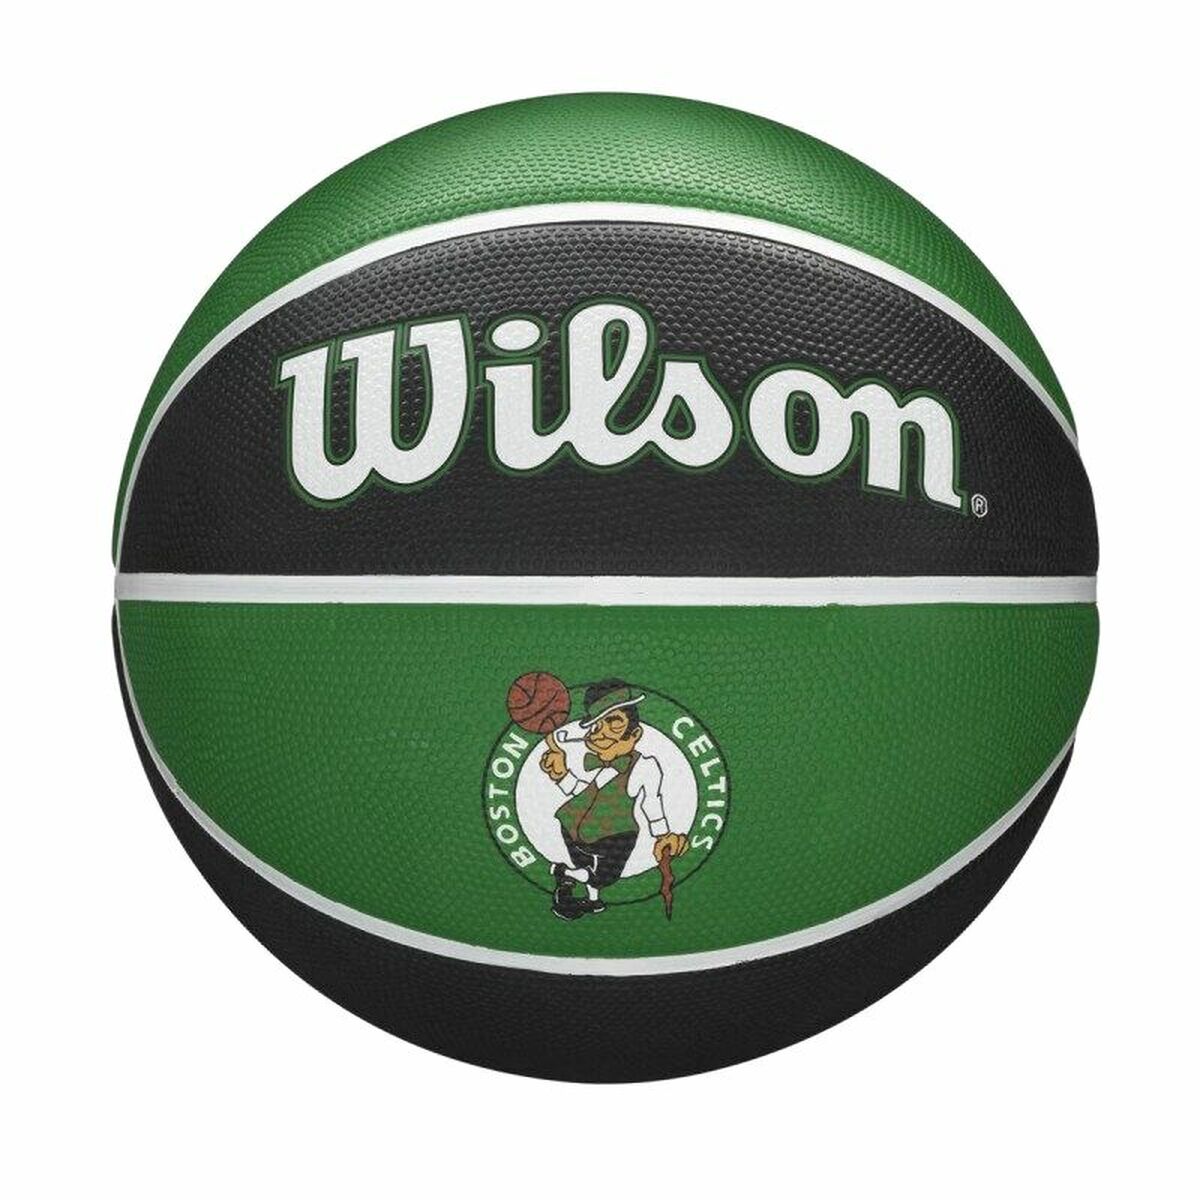 Pallone da Basket Wilson Nba Team Tribute Boston Celtics Verde Taglia unica